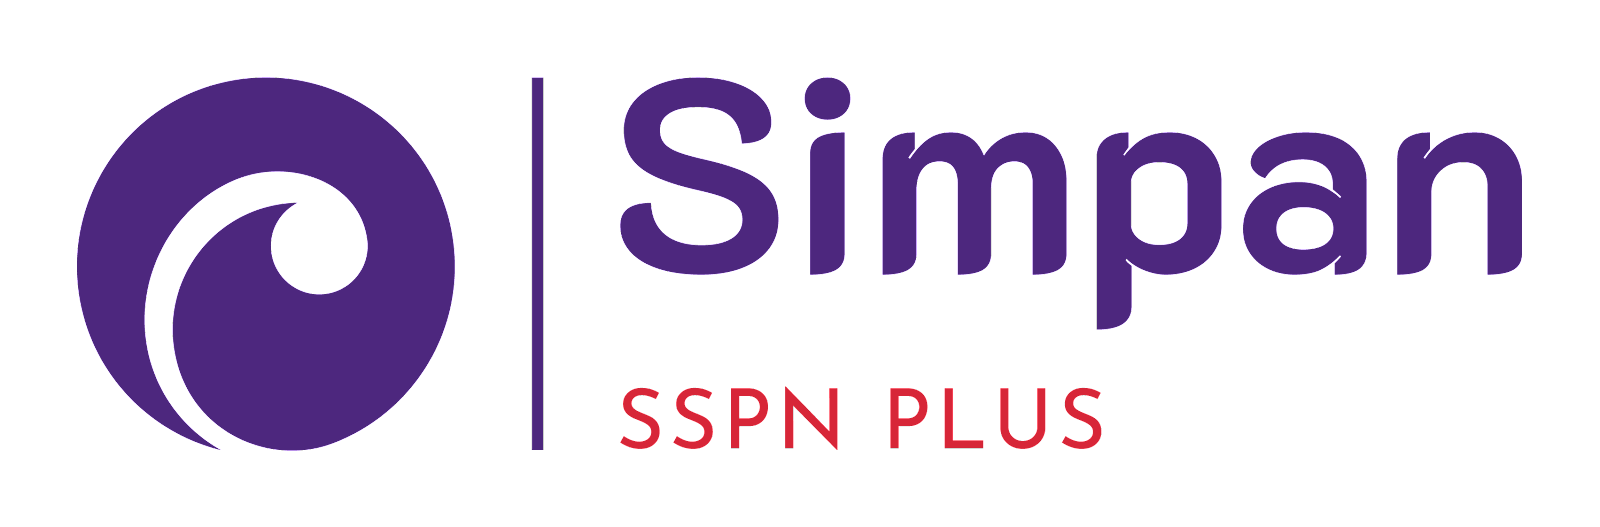 SSPN Plus